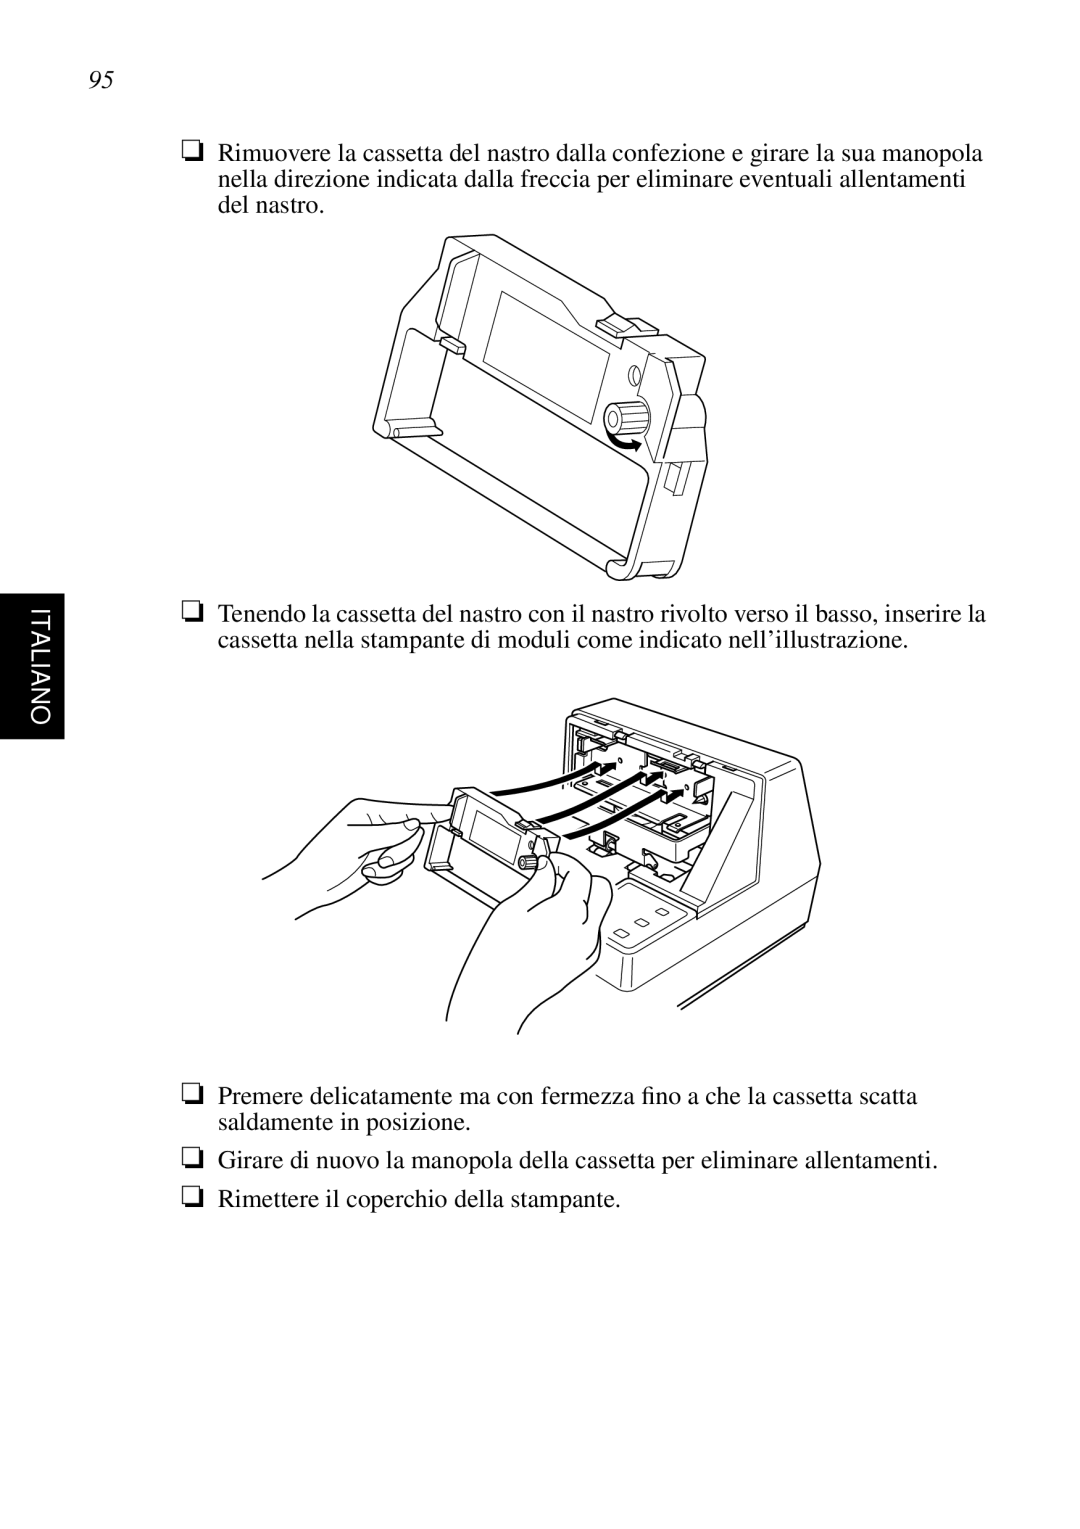 Star Micronics SP298 user manual Italiano, Girare di nuovo la manopola della cassetta per eliminare allentamenti 